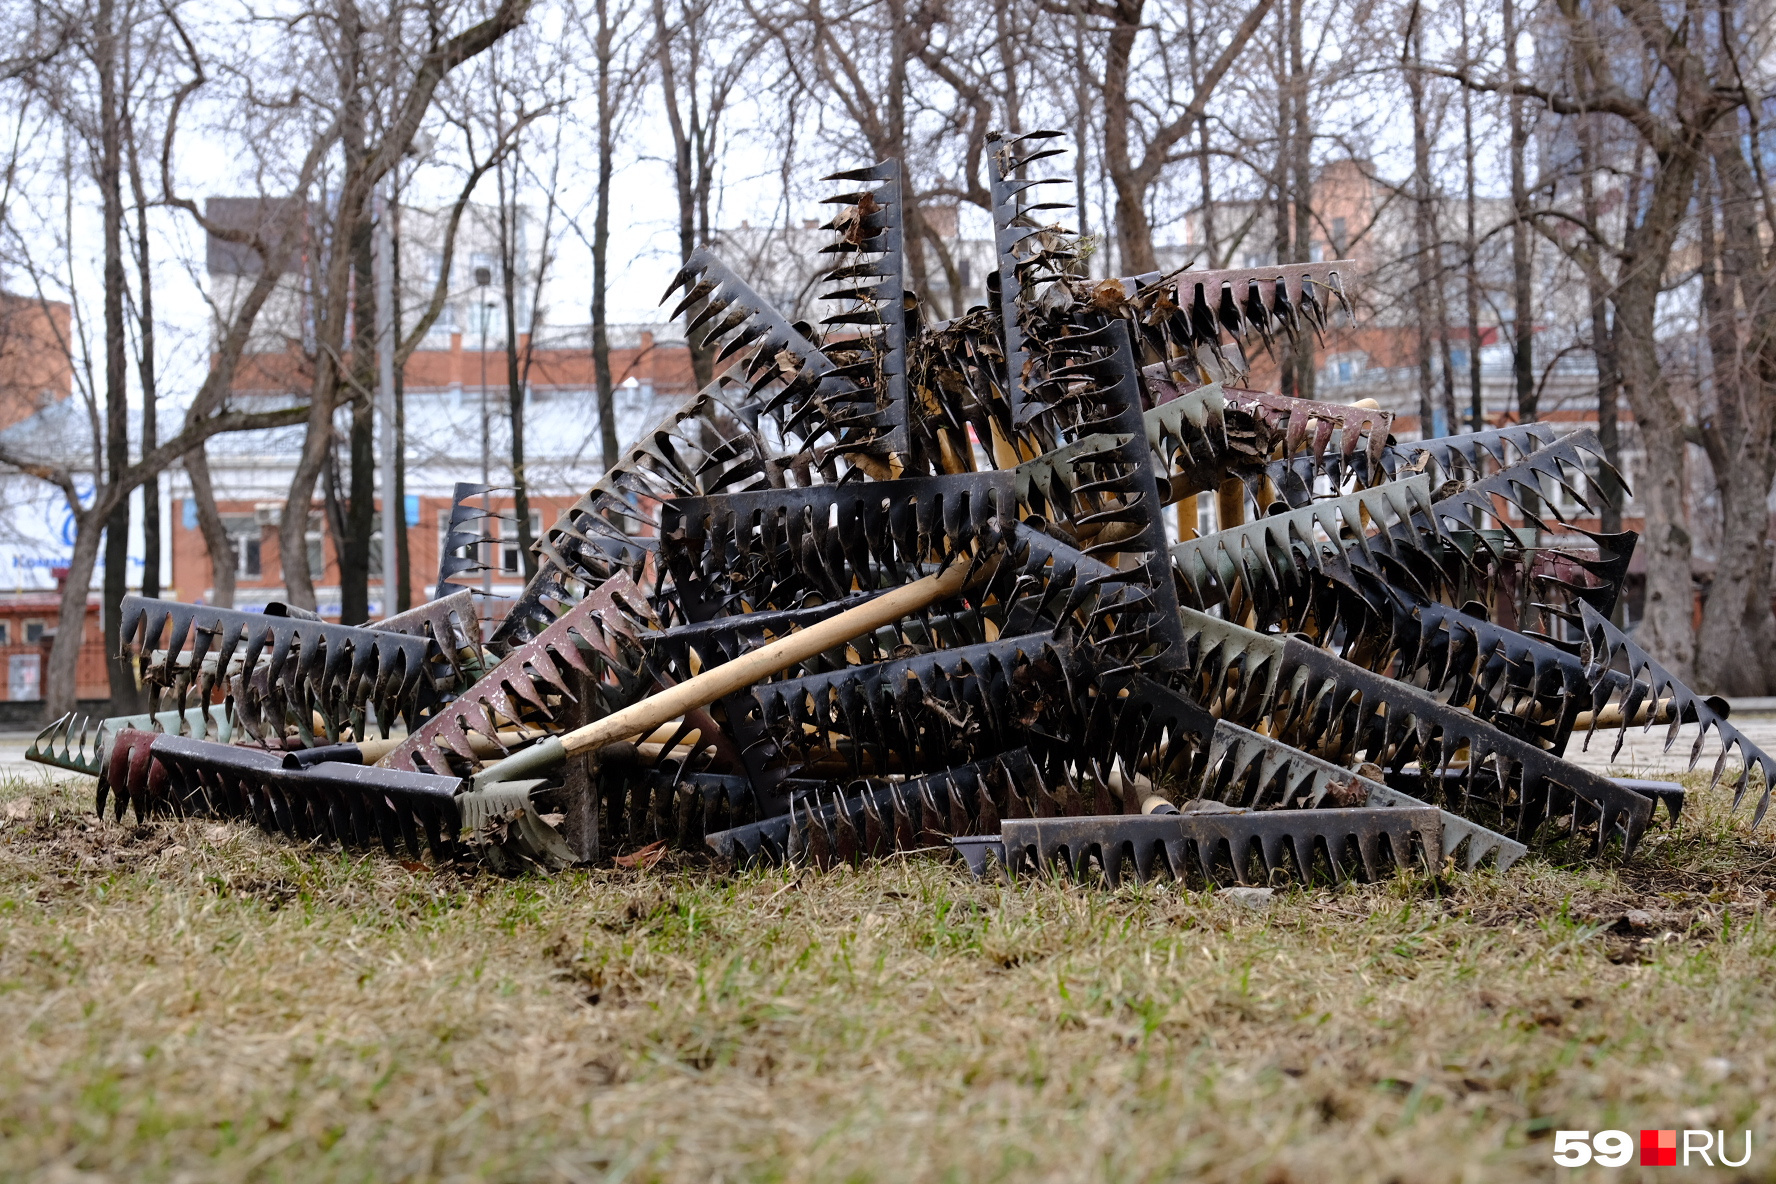 Это вовсе не арт-объект, а грабли, которые использовали в сквере Уральских добровольцев